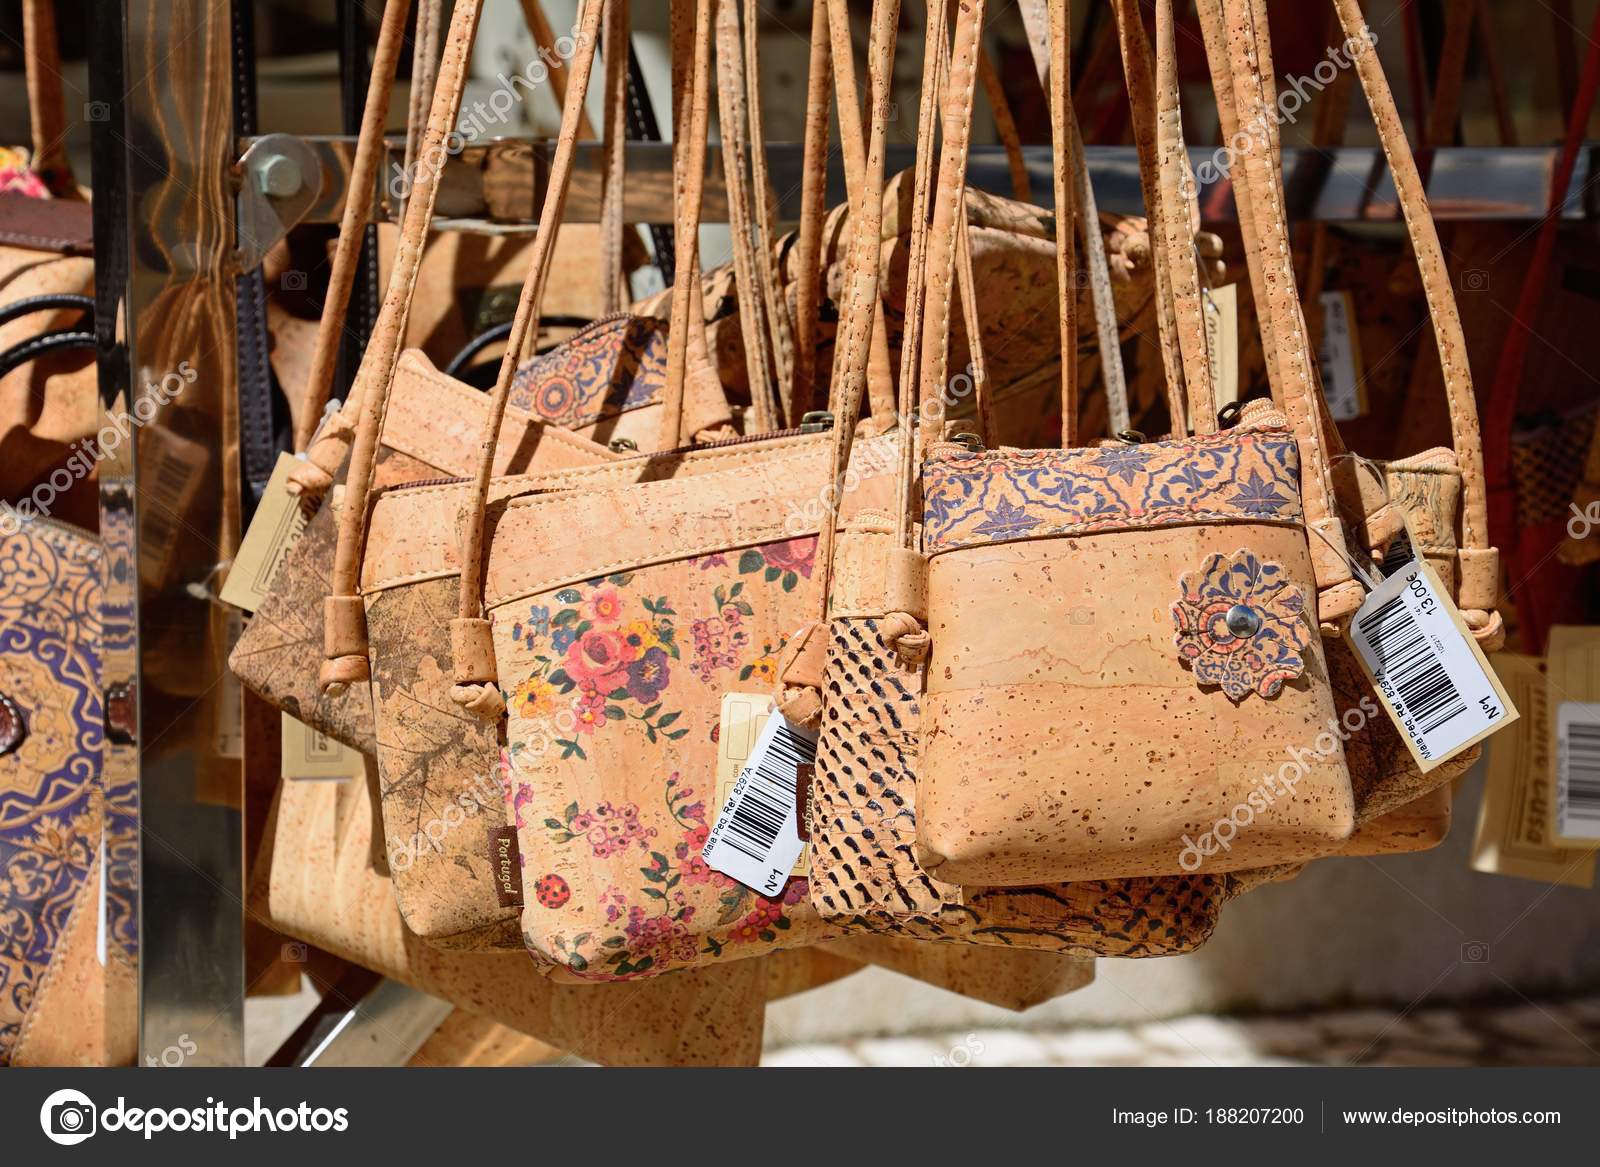 Portugisiske kork håndtasker til salg i en gammel bybutik, Lagos, Portugal – Redaktionelle stock-fotos © arenaphotouk #188207200